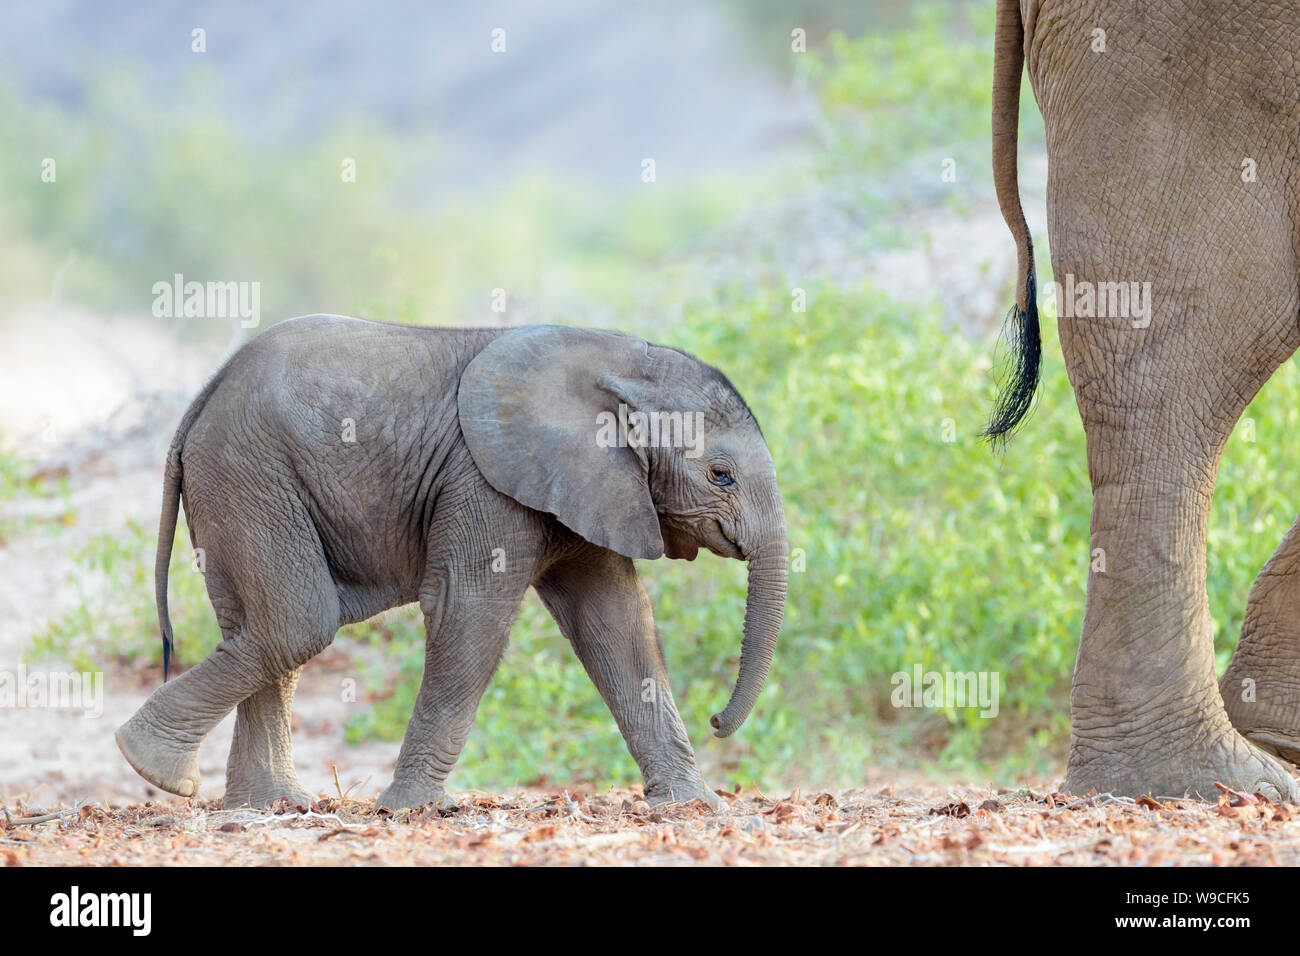 L'éléphant africain (Loxodonta africana), du désert-adapté, veau éléphant marchant derrière mère dans la rivière à sec, Hoanib désert, Kaokoland, la Namibie. Banque D'Images